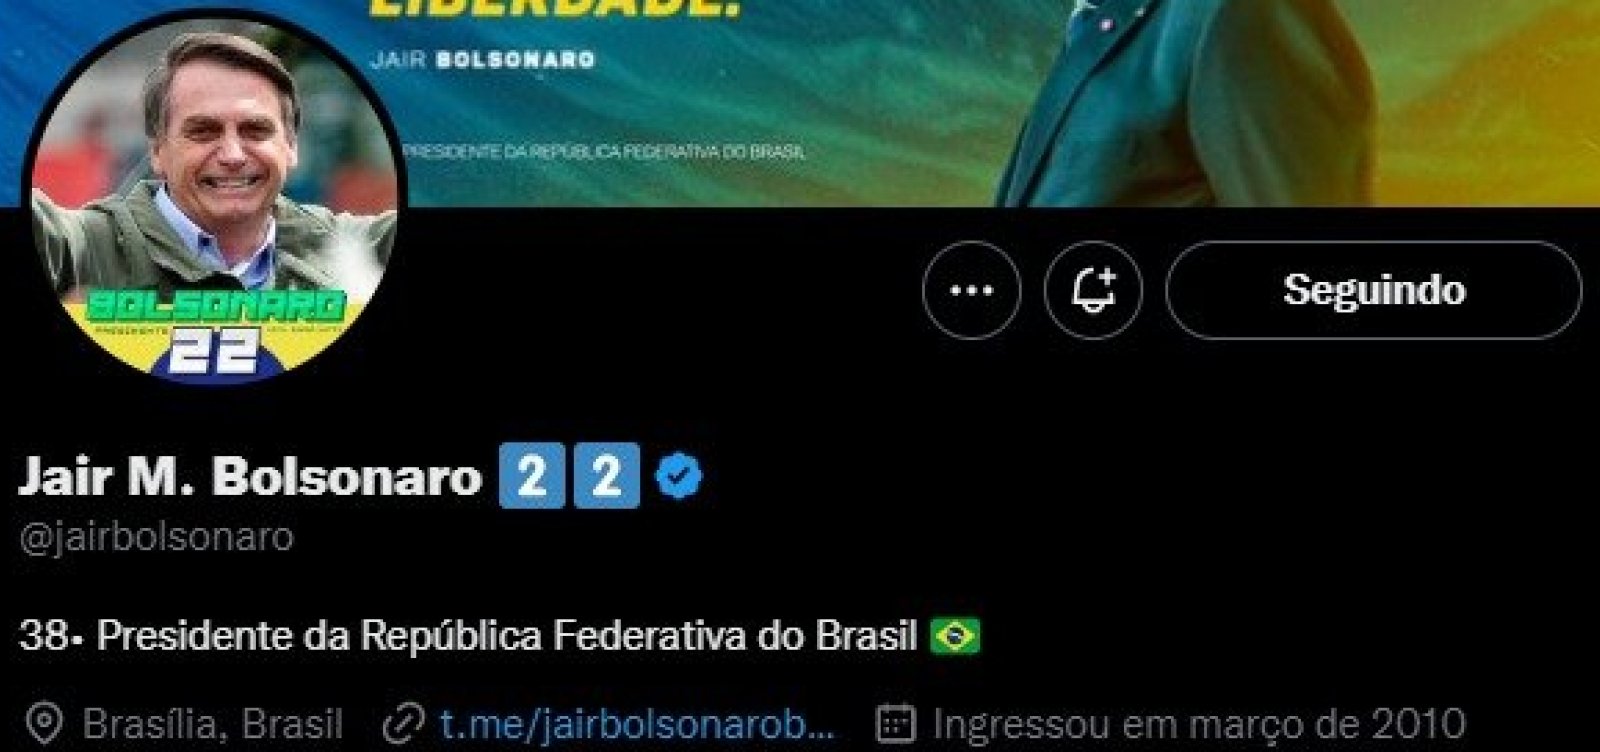 Duas semanas após deixar Presidência, Jair Bolsonaro altera descrição nas redes